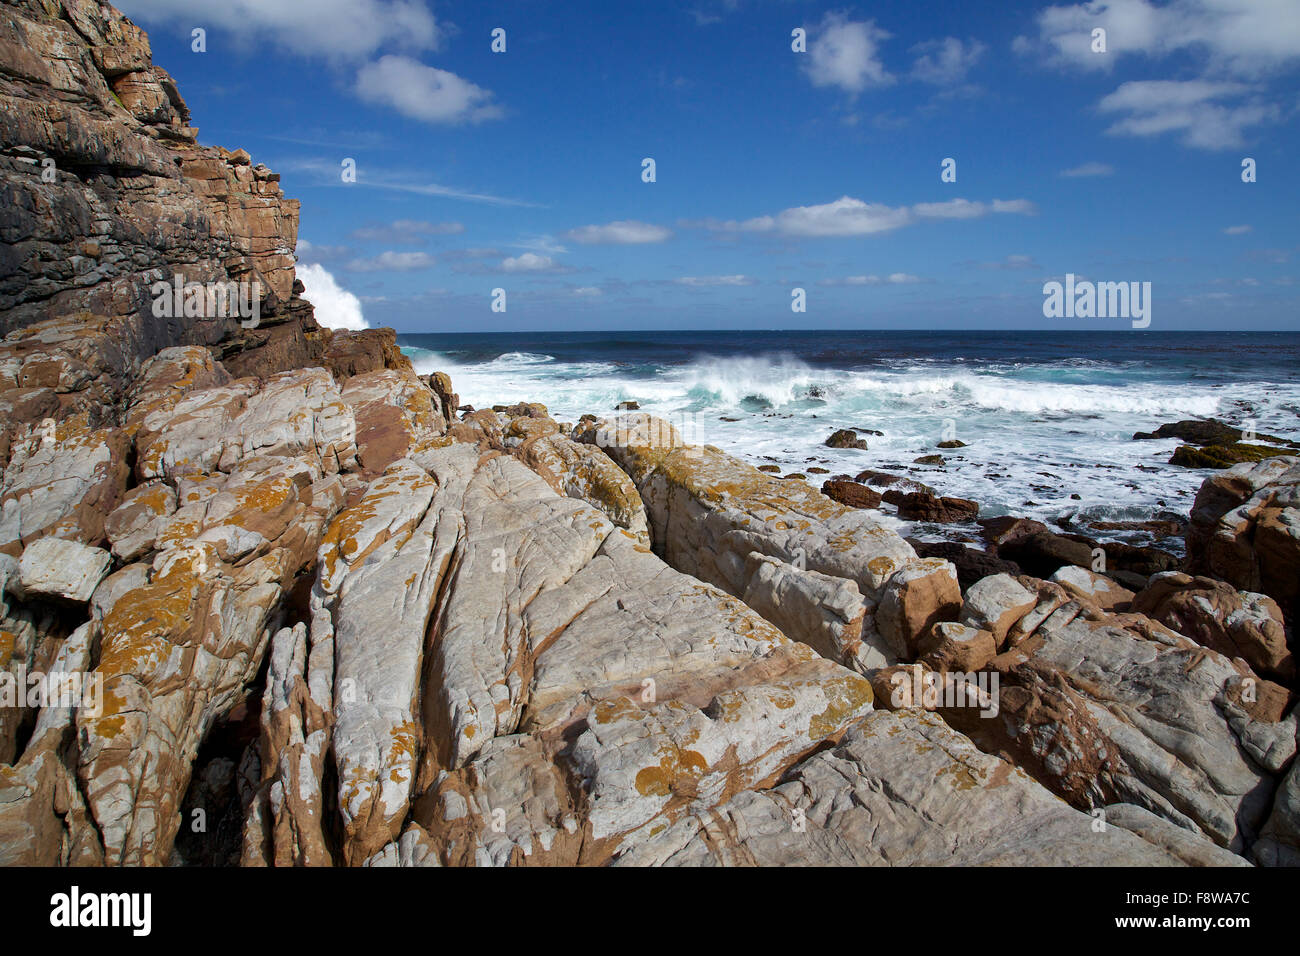 La pointe du Cap de Bonne Espérance avec des rochers en premier plan et les vagues dans l'océan et le ciel bleu en arrière-plan Banque D'Images